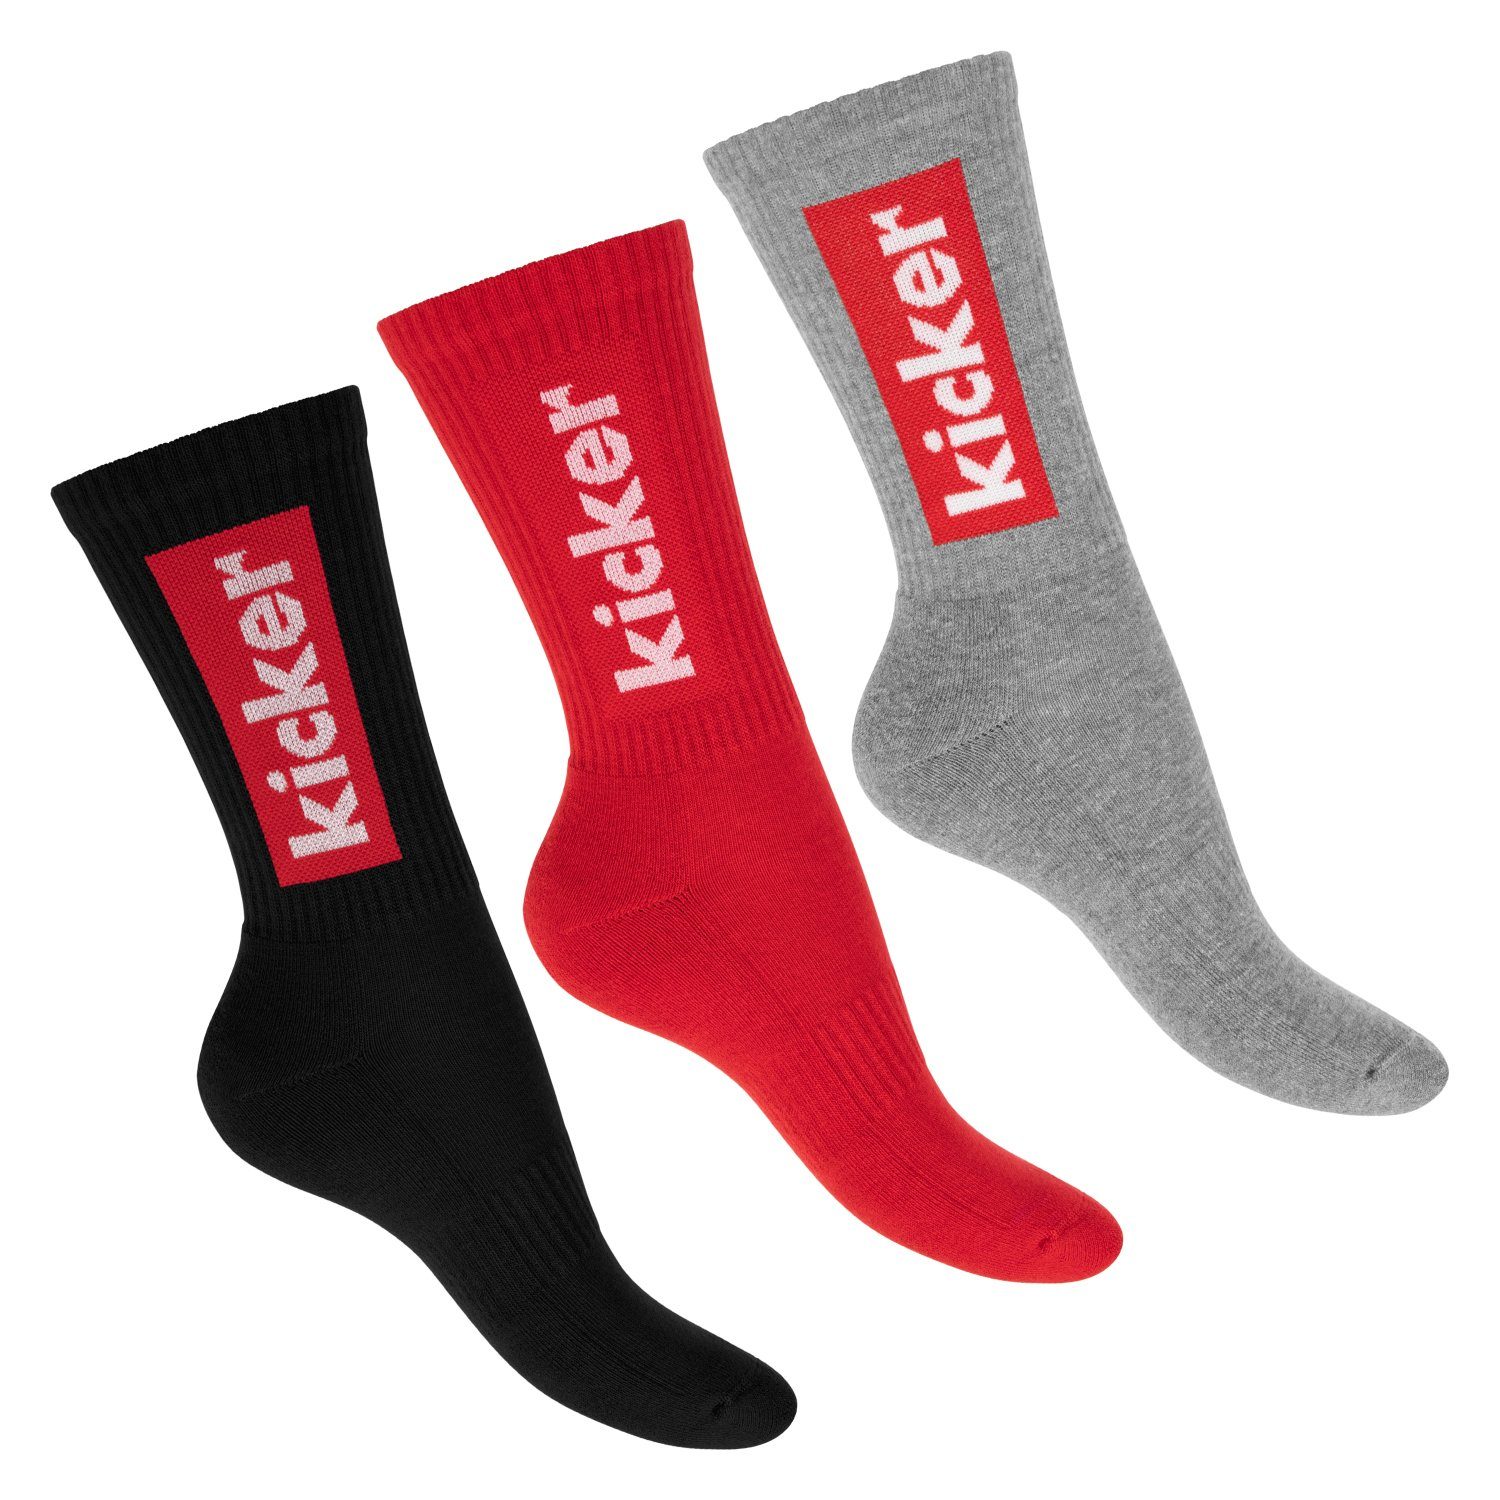 Kicker Tennissocken kicker Damen & Herren Crew Socks (3 Paar) Schwarz Rot Grau 39-42 (3-Paar)